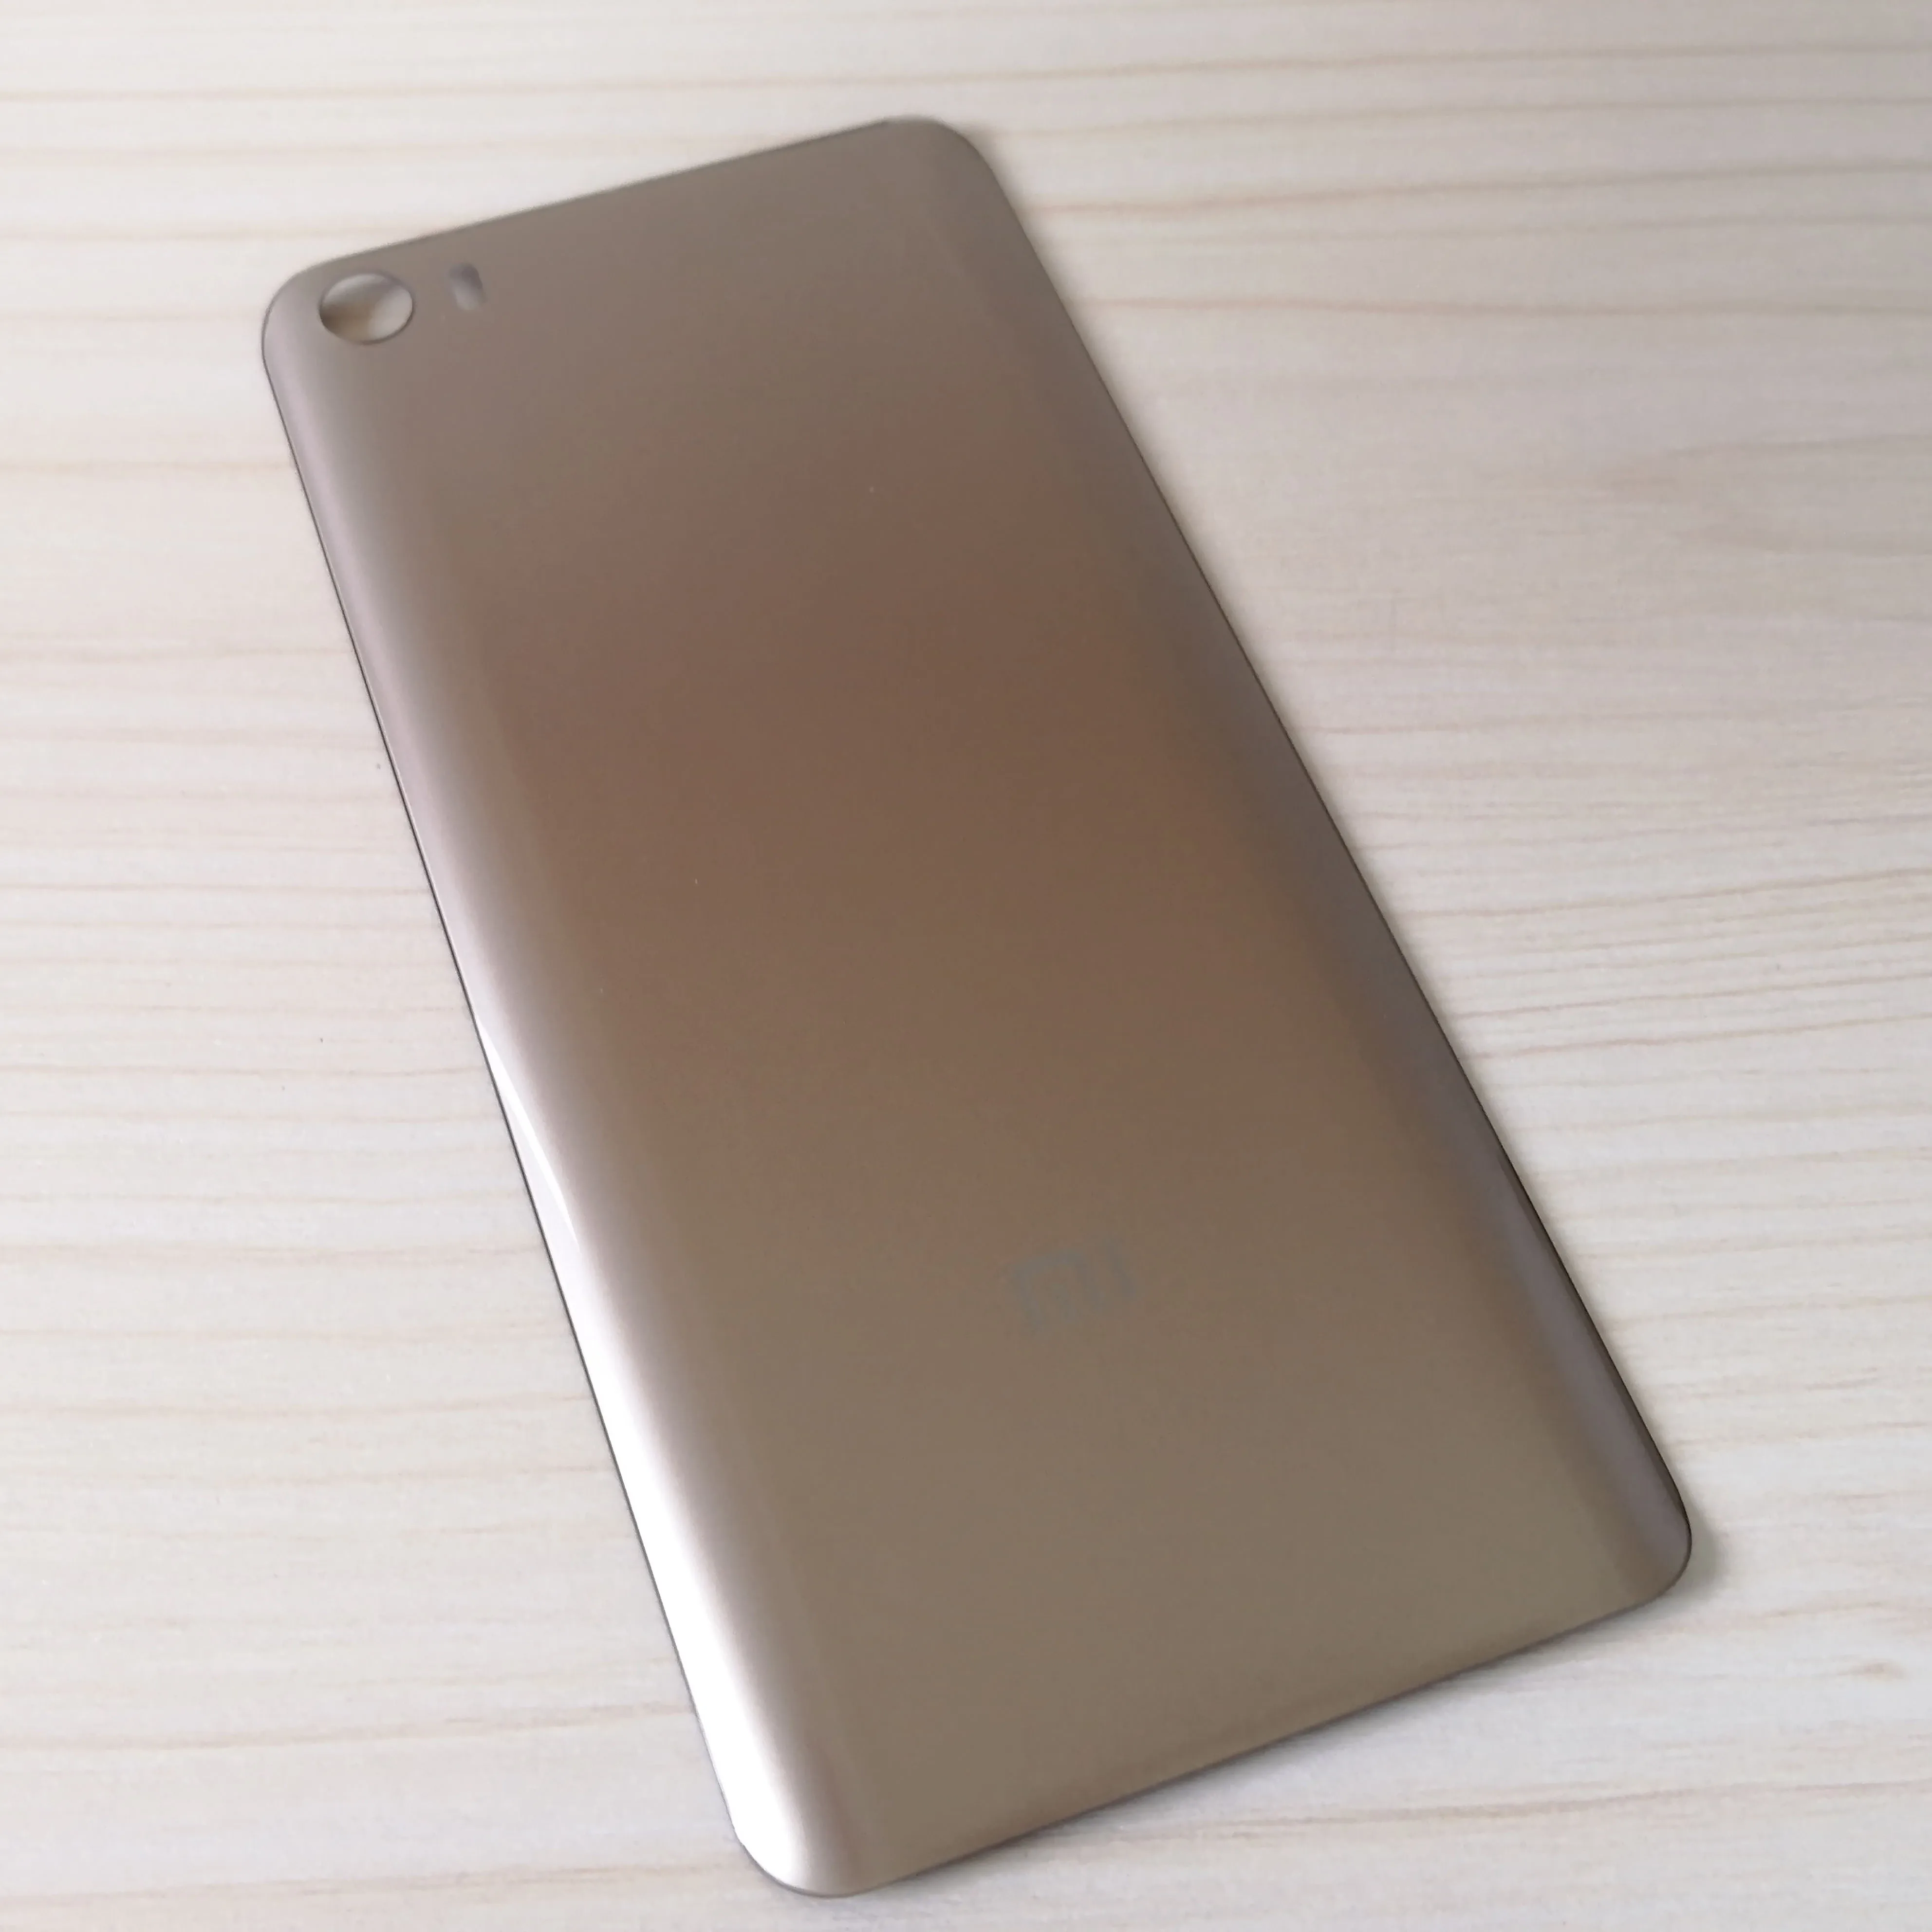 Mi 5 3D стекло с логотипом задняя крышка для Xiaomi mi 5 5,15 дюймов корпус панель батарейного отсека для Xiaomi mi 5 задняя крышка батарейного отсека - Цвет: Gold for Mi 5